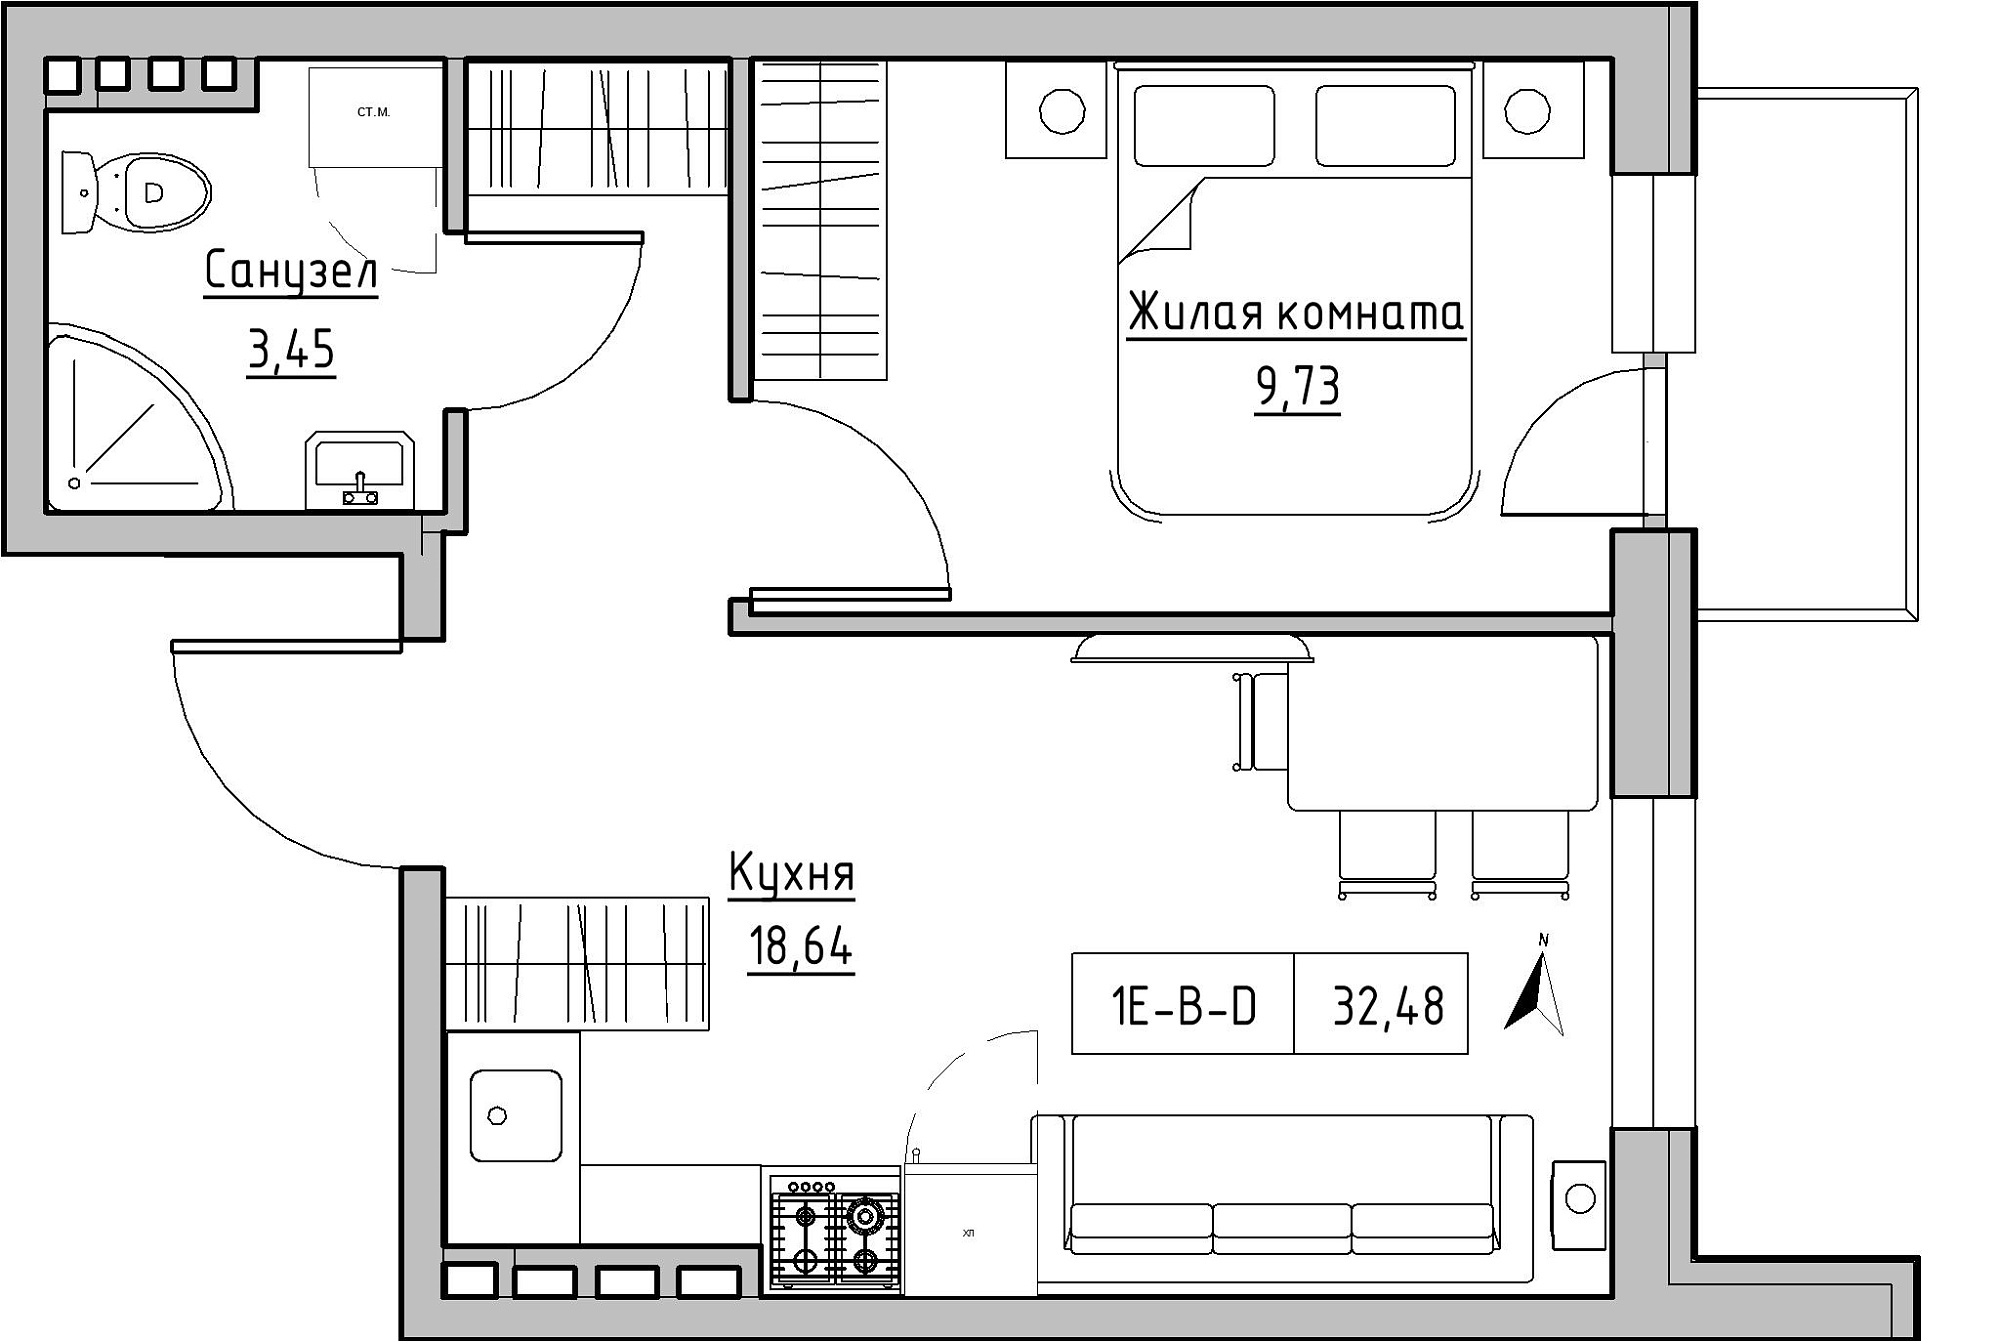 Планировка 1-к квартира площей 32.48м2, KS-024-03/0015.